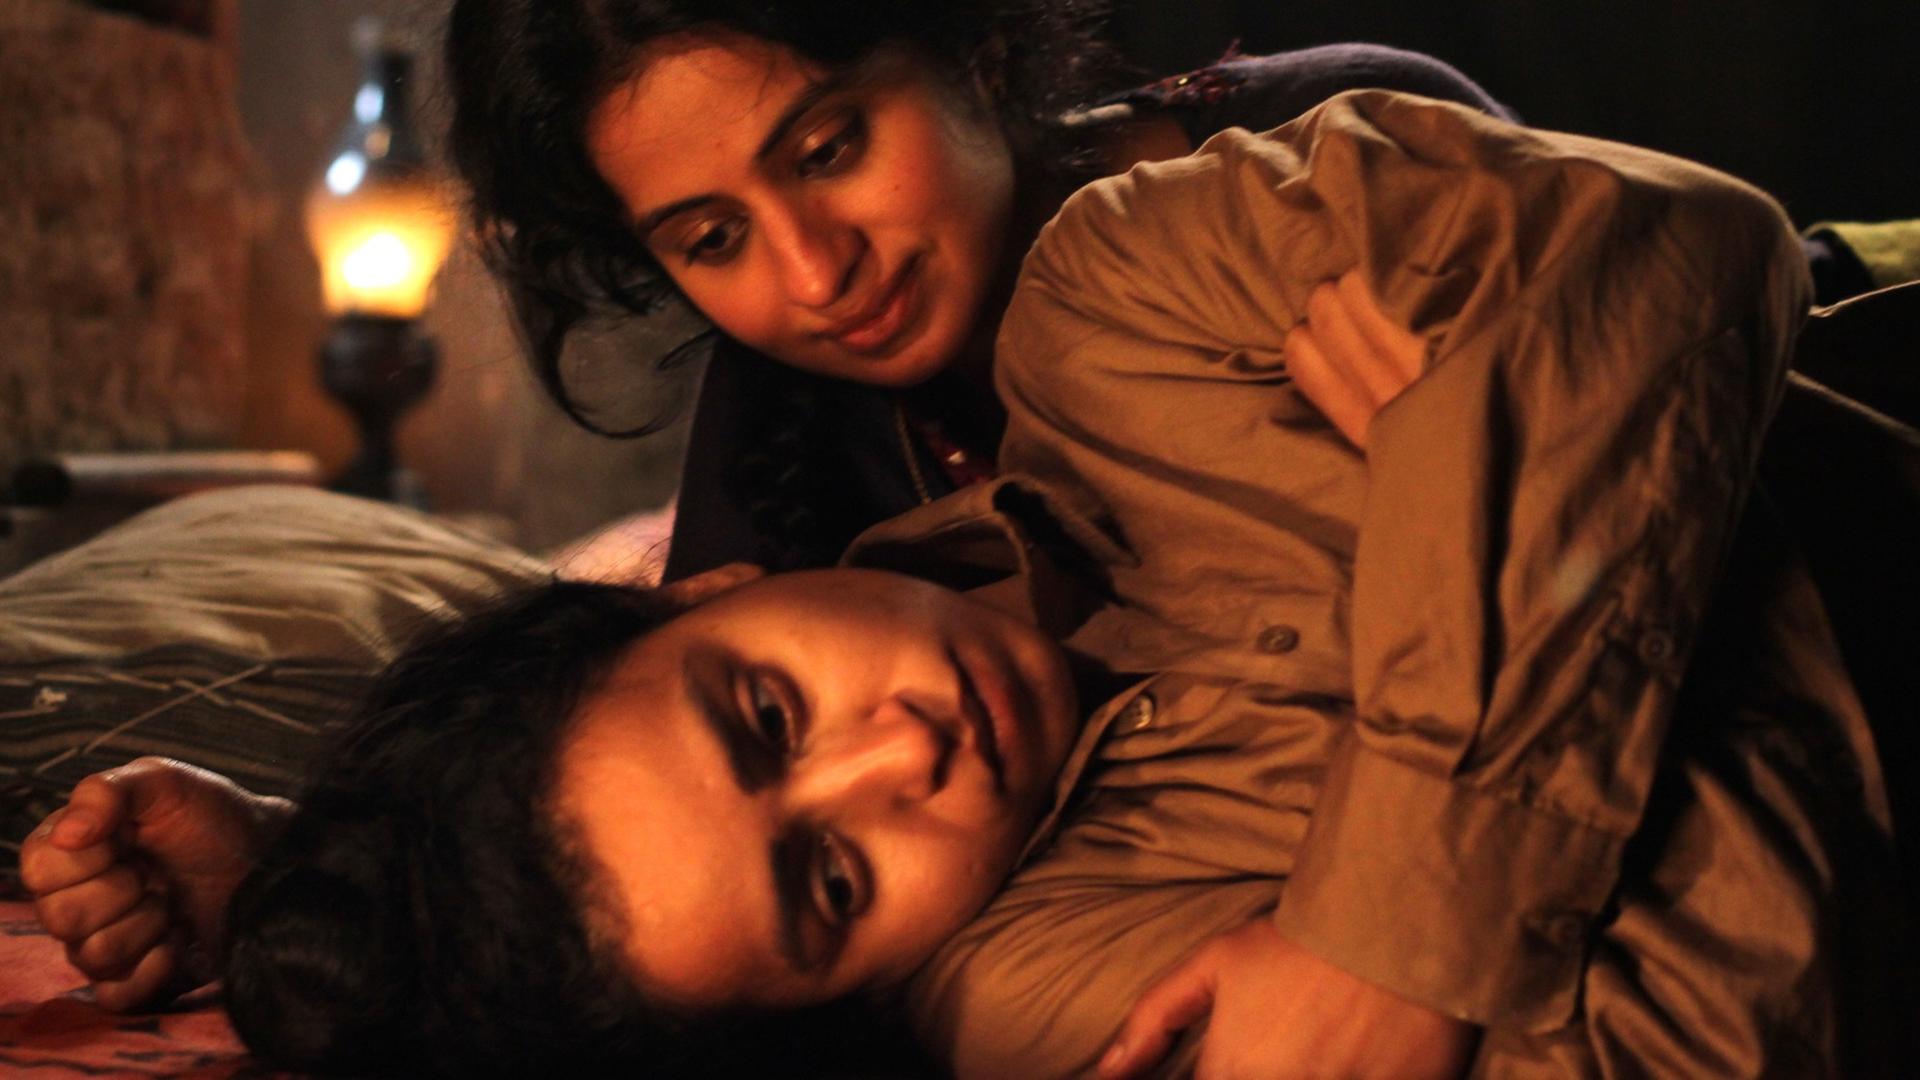 Tilotama Shome als Kanwar Singh (unten) und Tisca Chopra als Mehar in einer undatierten Szene des Films "Qissa - Der Geist ist ein einsamer Wanderer".